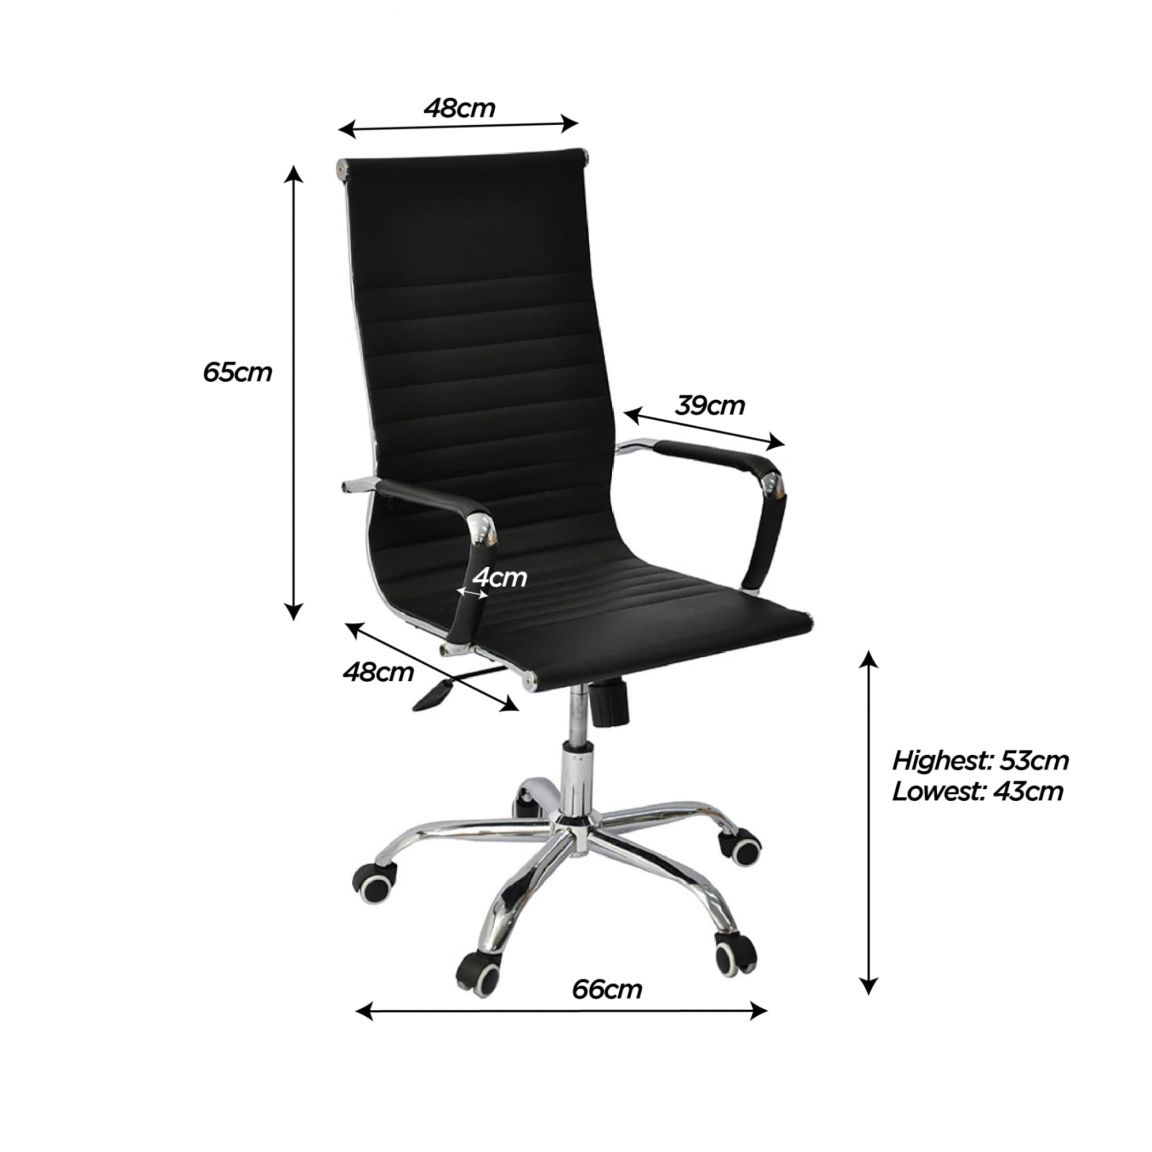 Tiêu chuẩn chiều rộng của ghế văn phòng